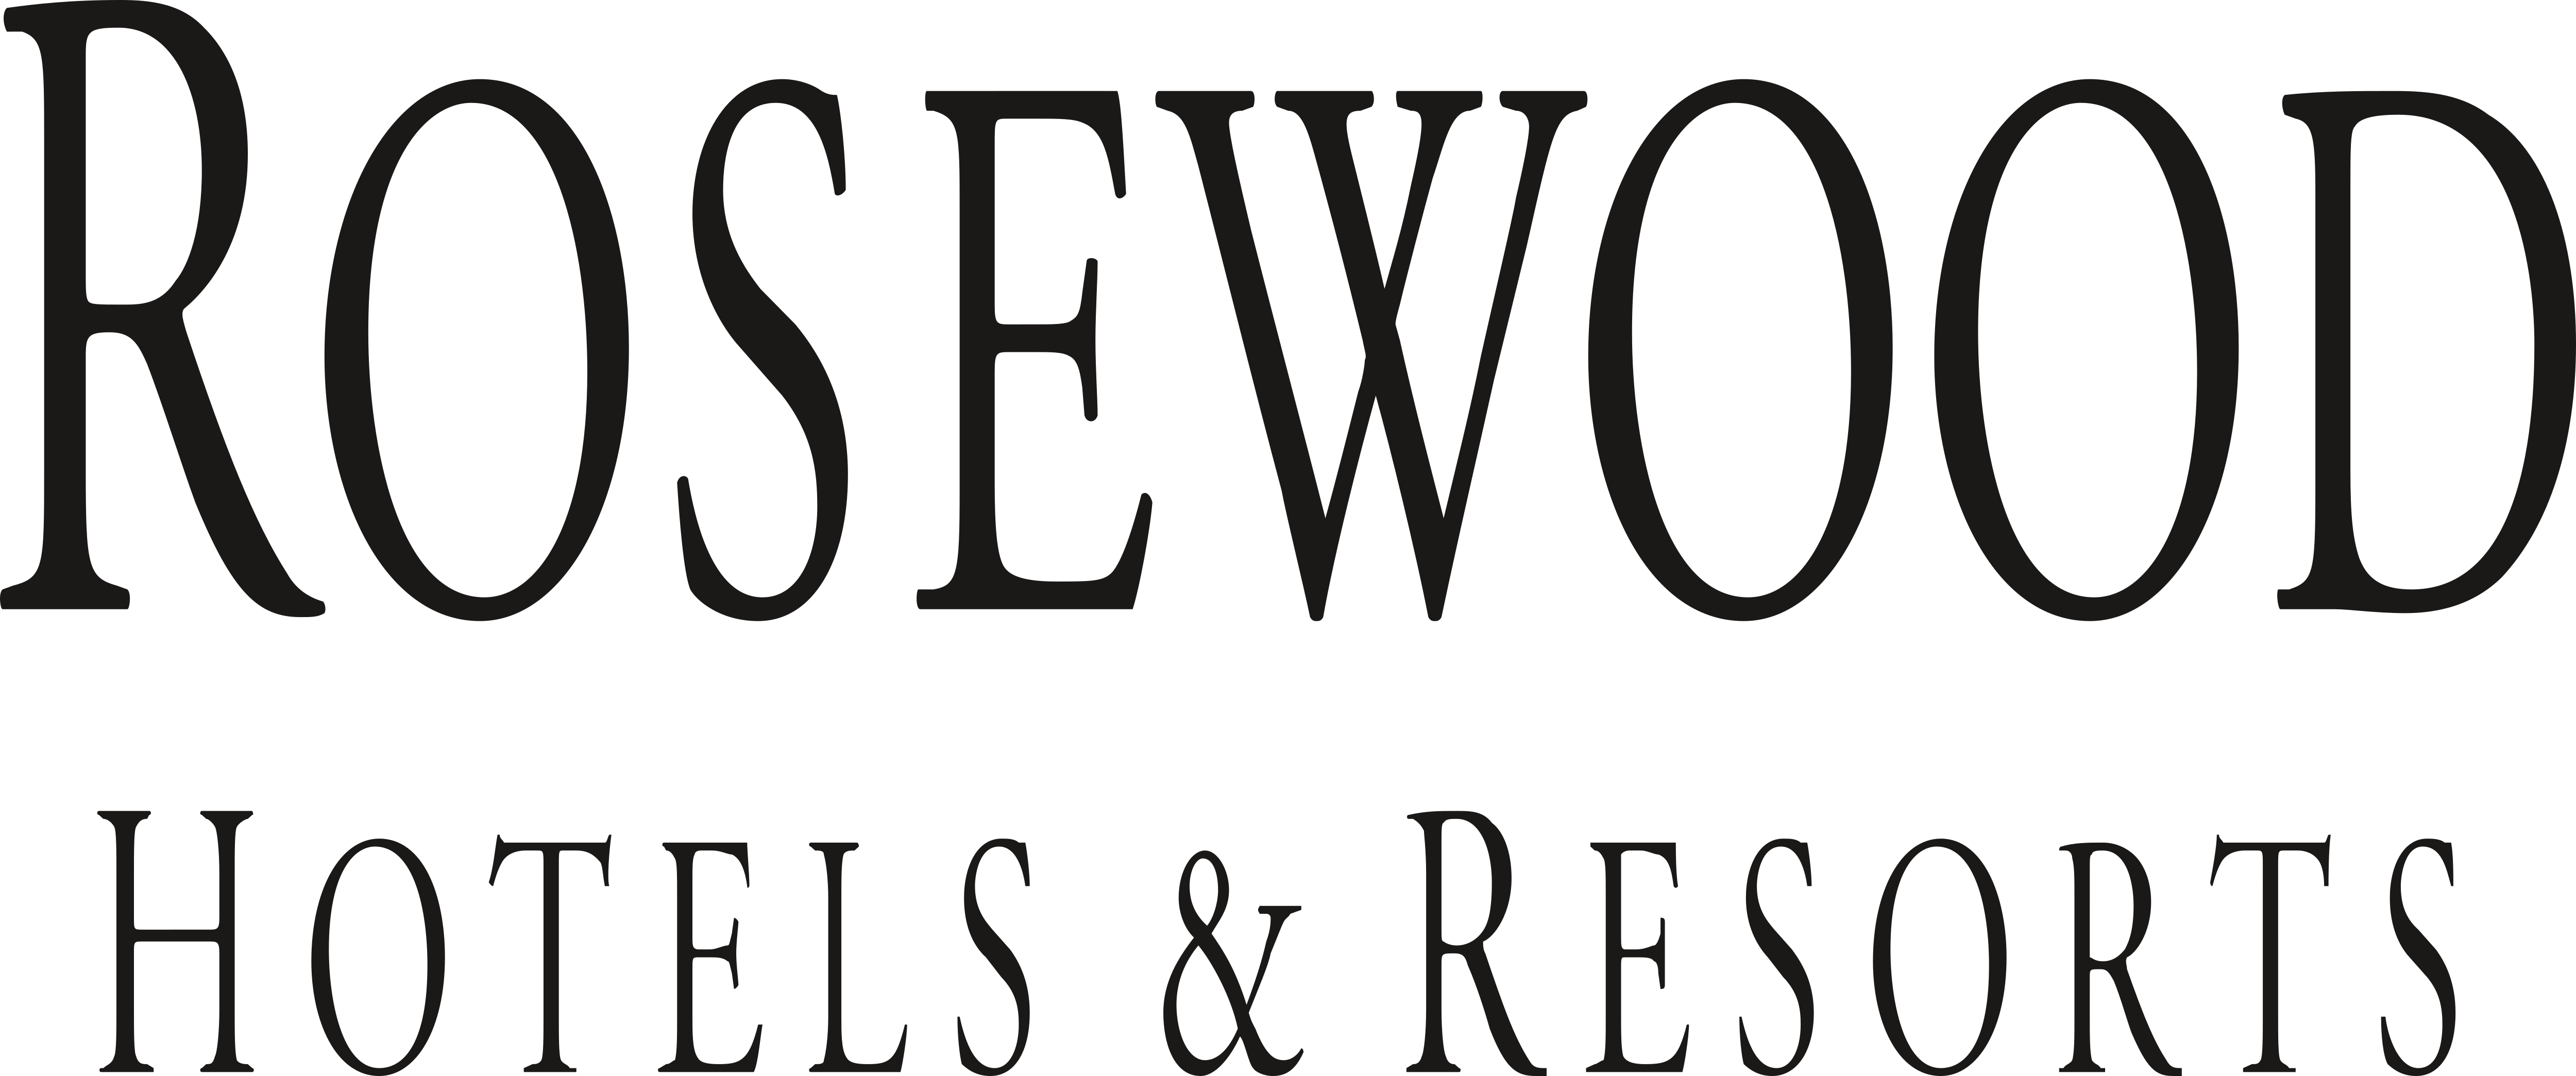 Rosewood Hotel & Resorts – Logos Download